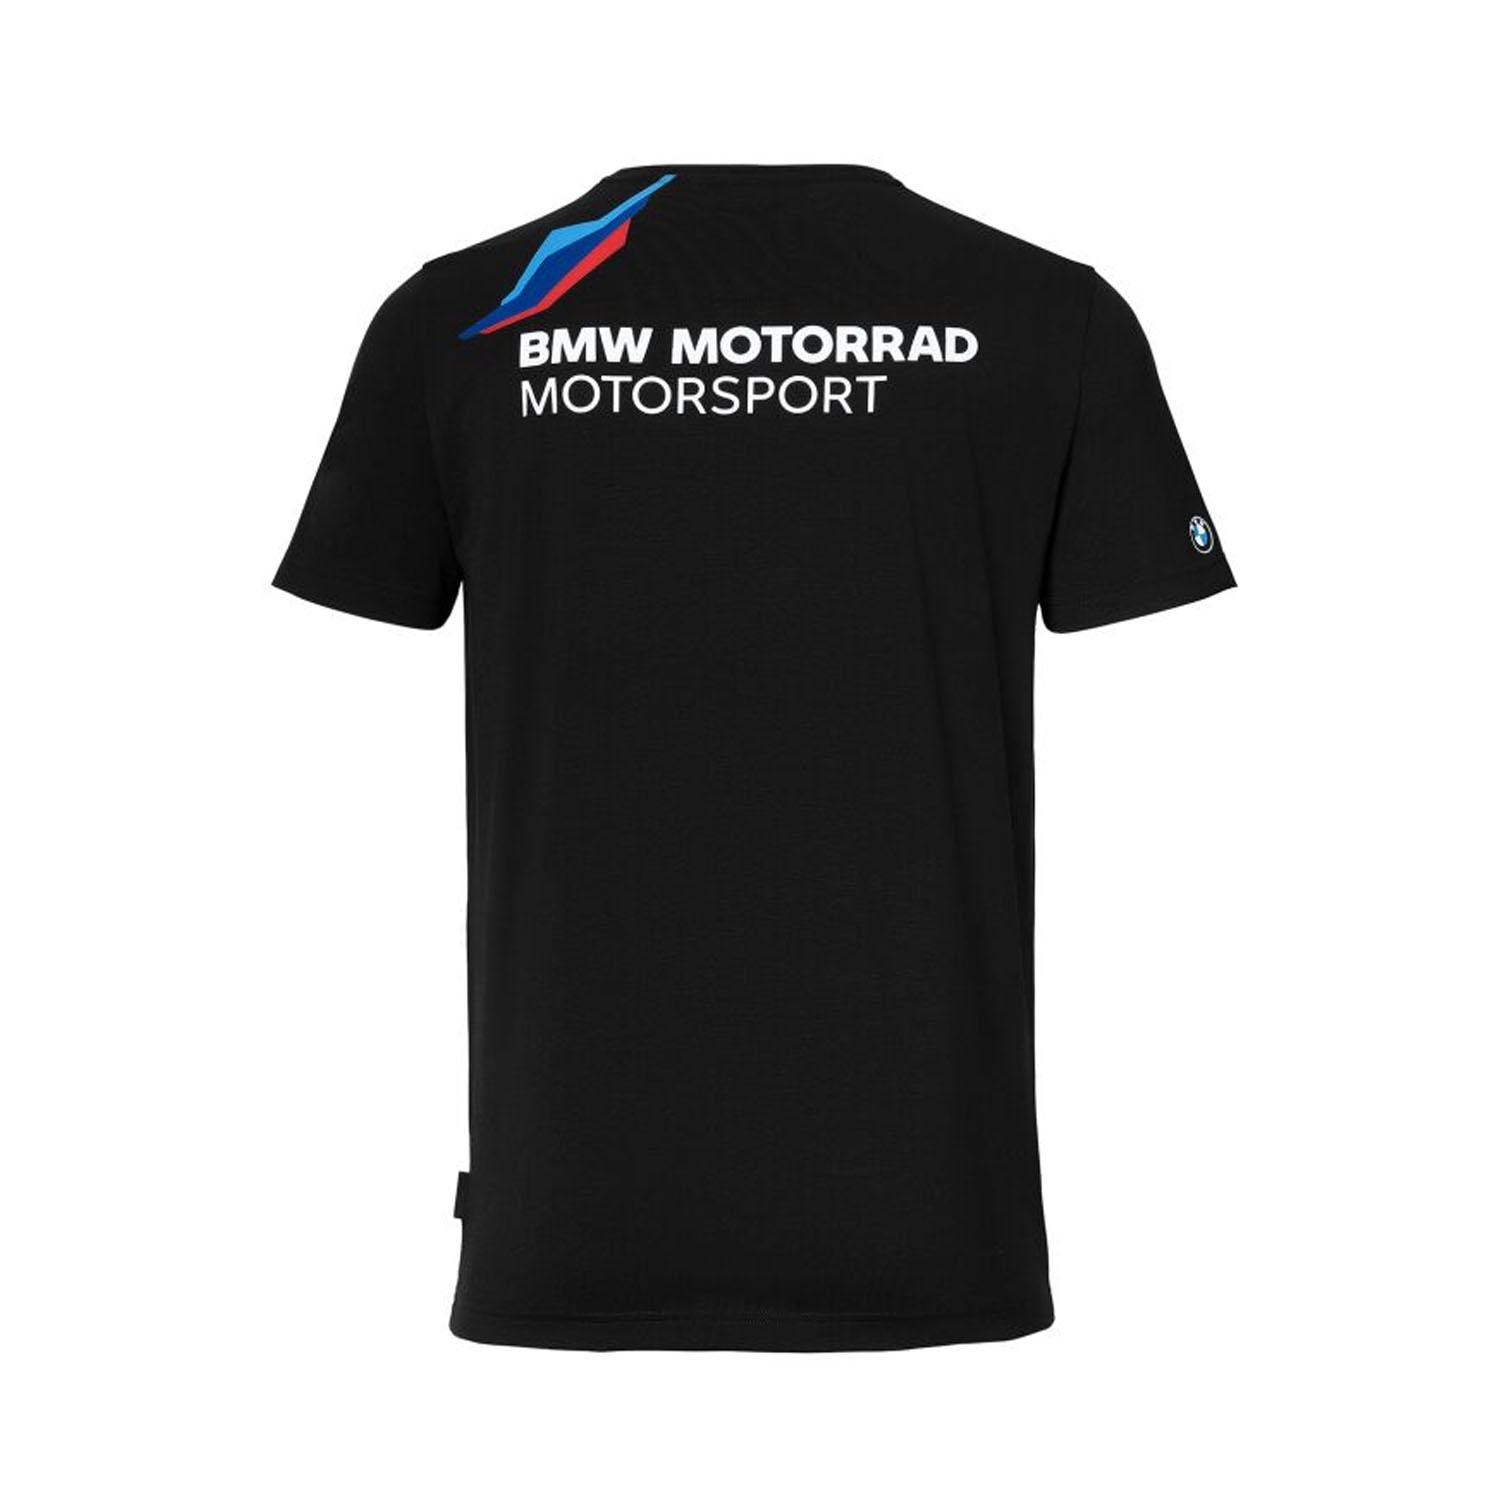 BMW Dealer T-shirt homme (noir) acheter pas cher ▷ bmw-motorrad-bohlin